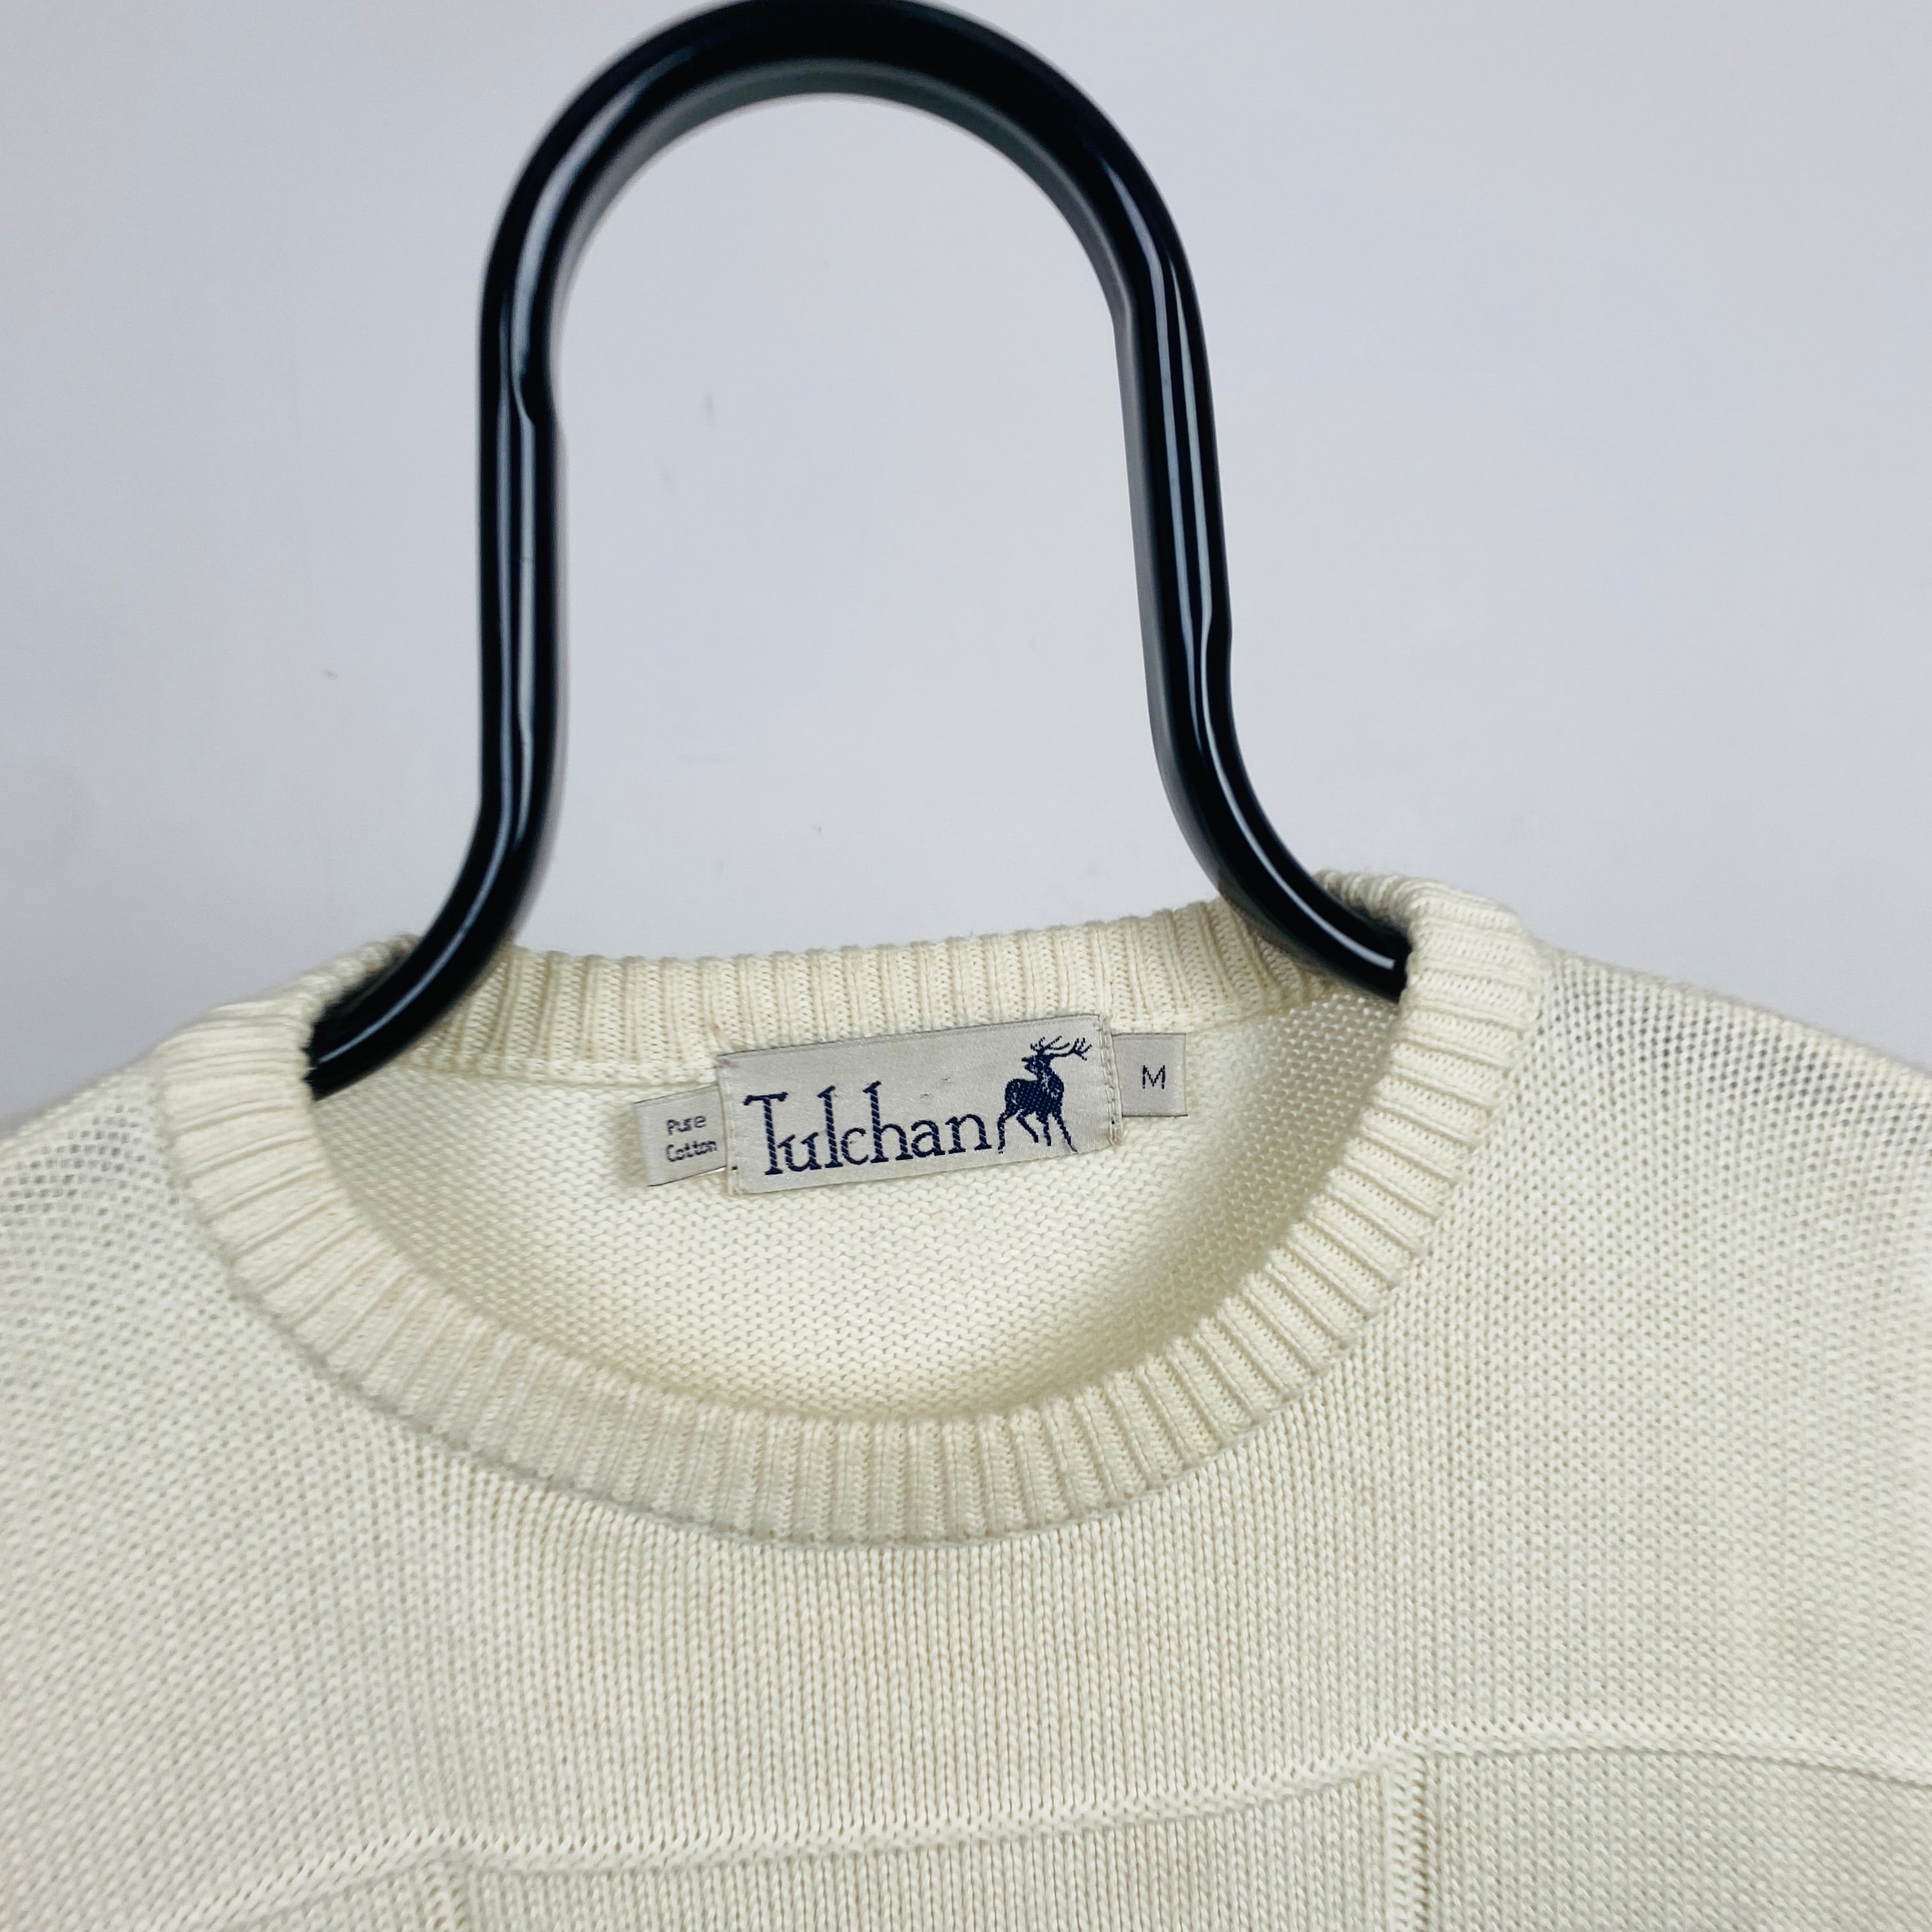 Retro Tulchan Flower Knit Sweatshirt Brown Medium